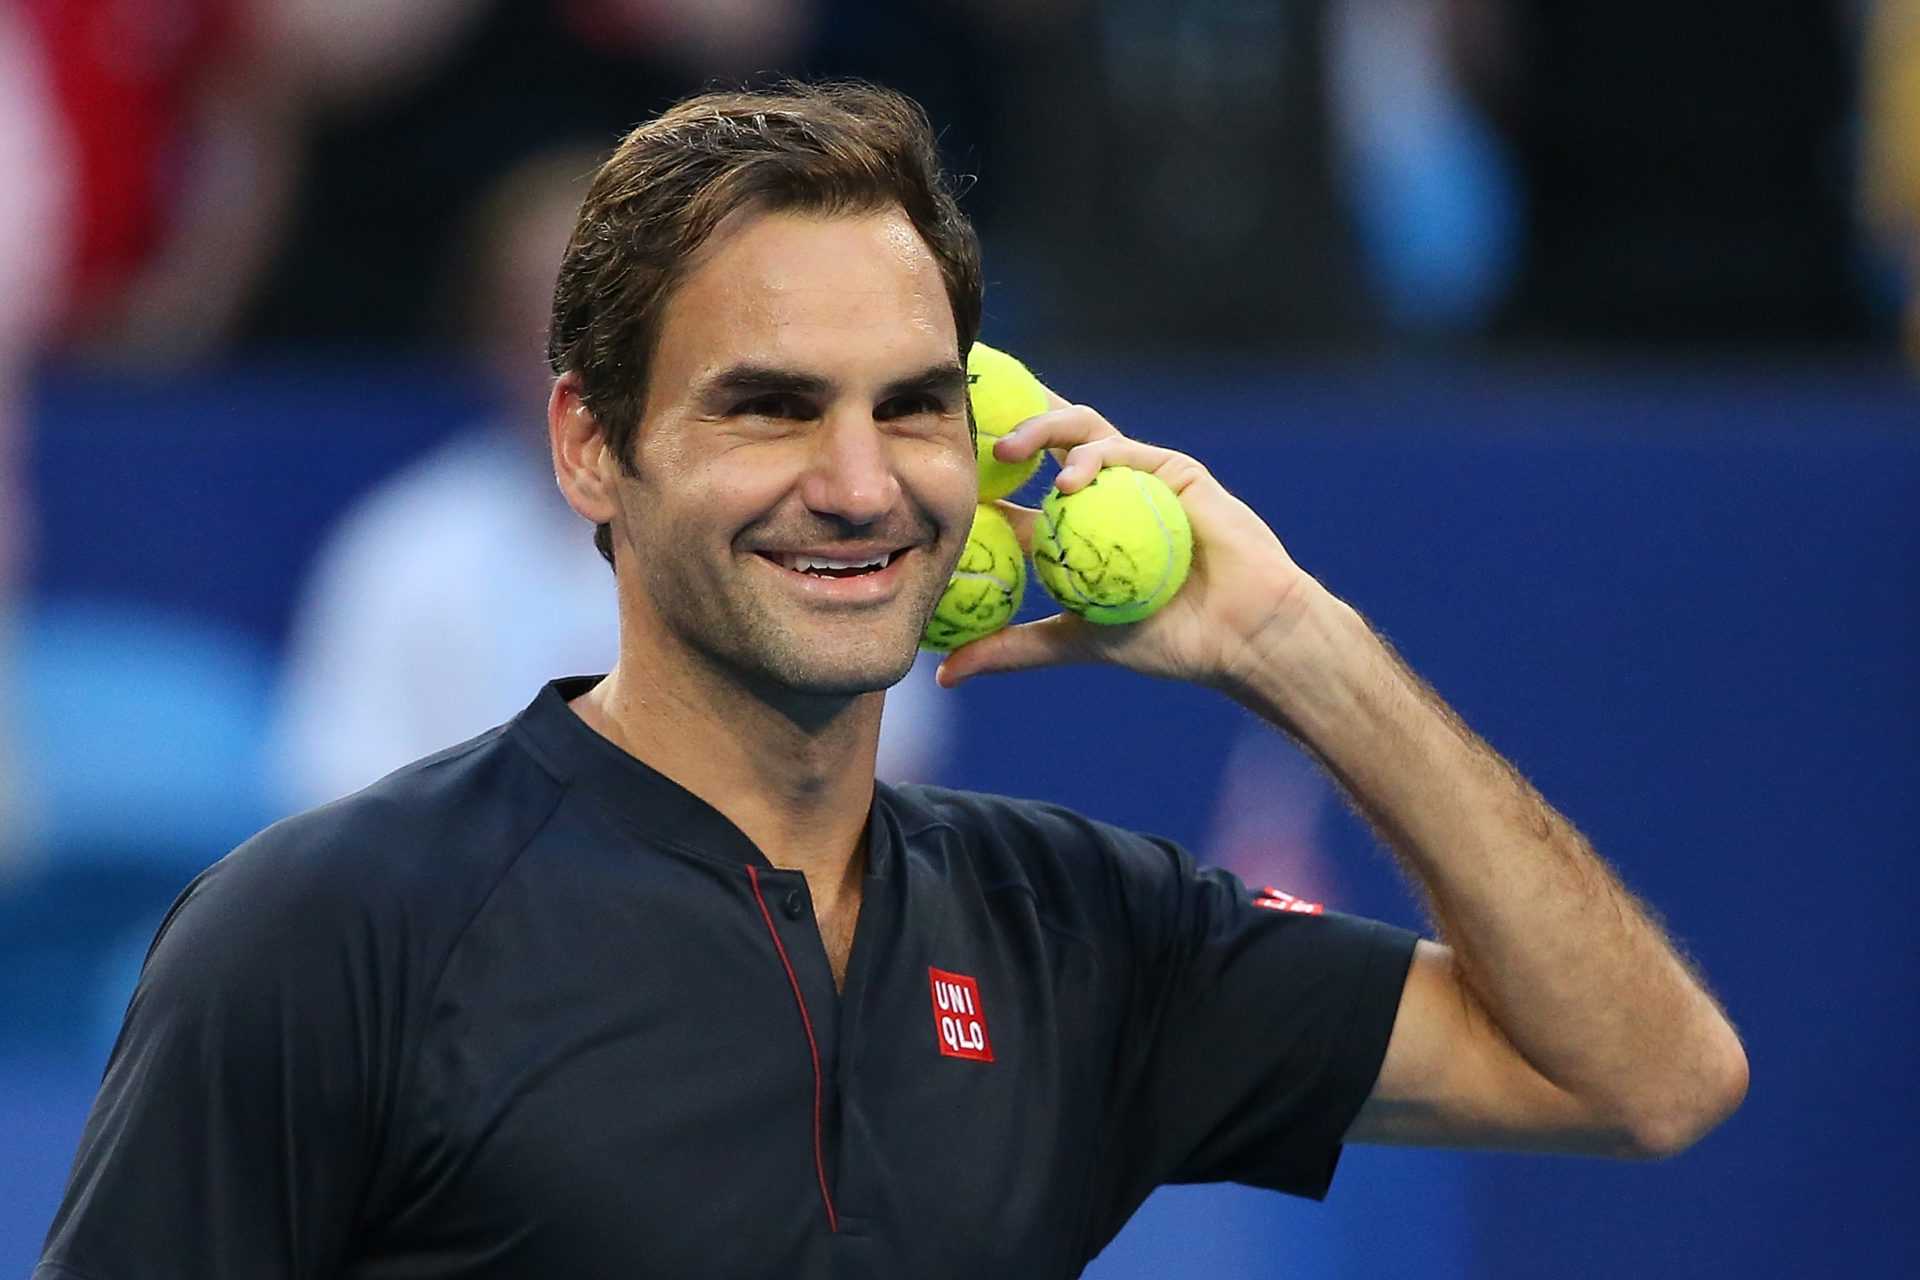 REGARDER: La ligne de chaussures de Roger Federer taquine la place pour la nouvelle série tendance «Shuffle»